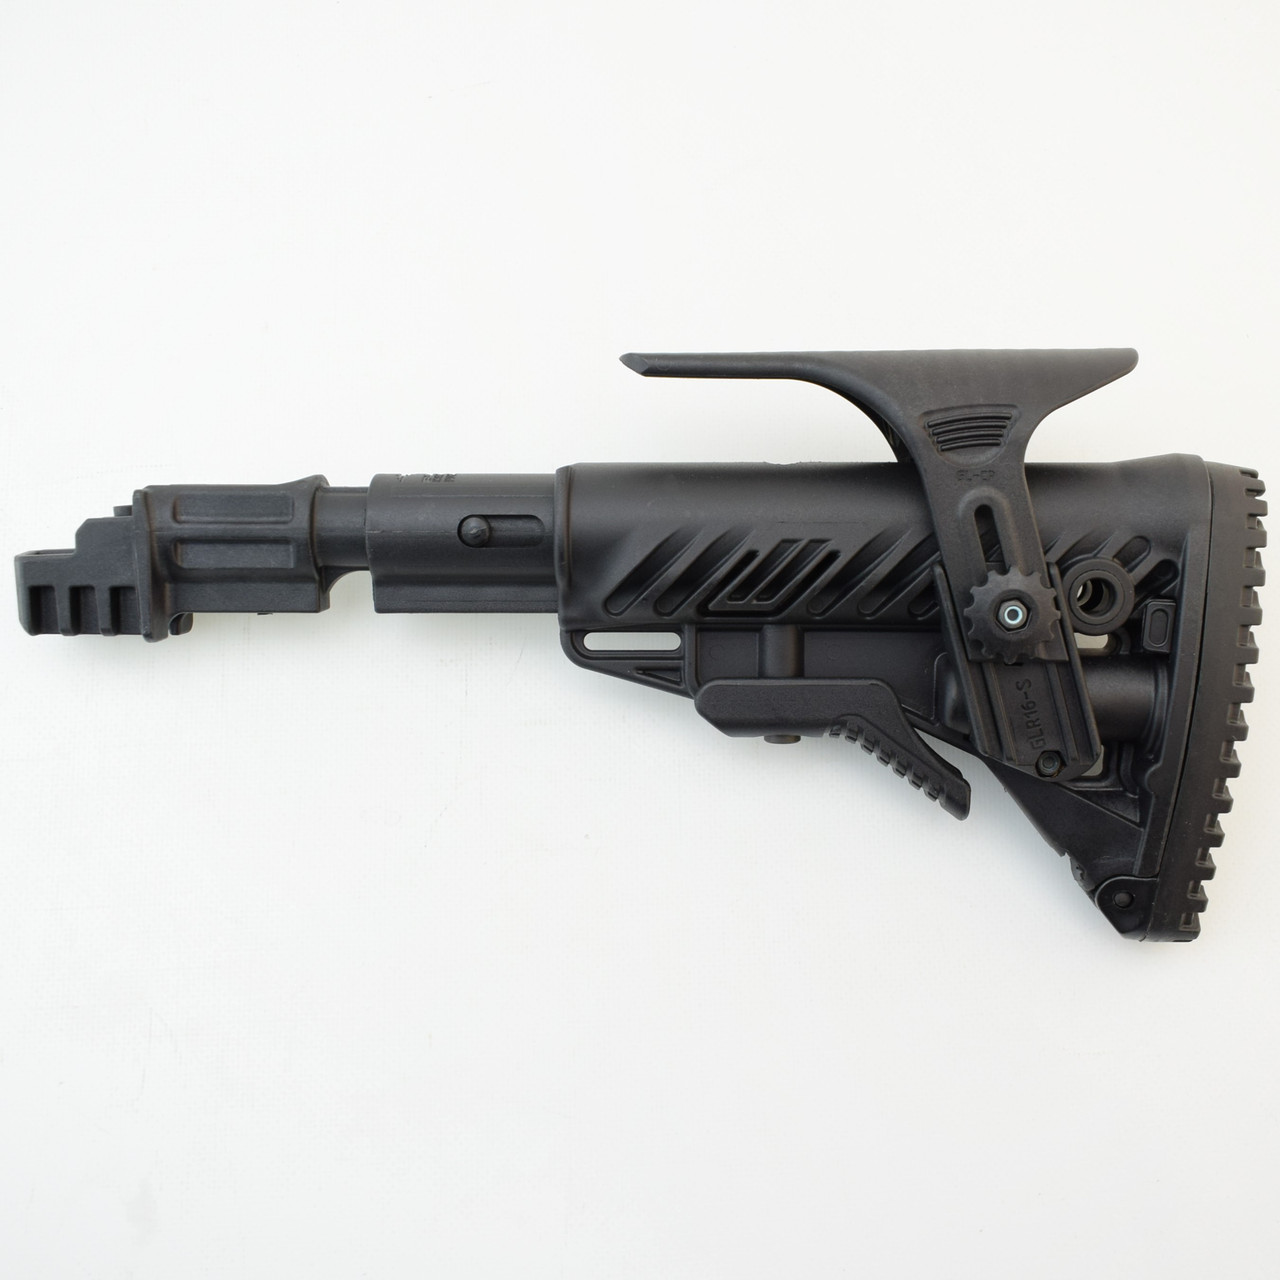 Приклад FAB Defense для AK 47/74 телескопічний з регульованою щокою. Колір - чорний